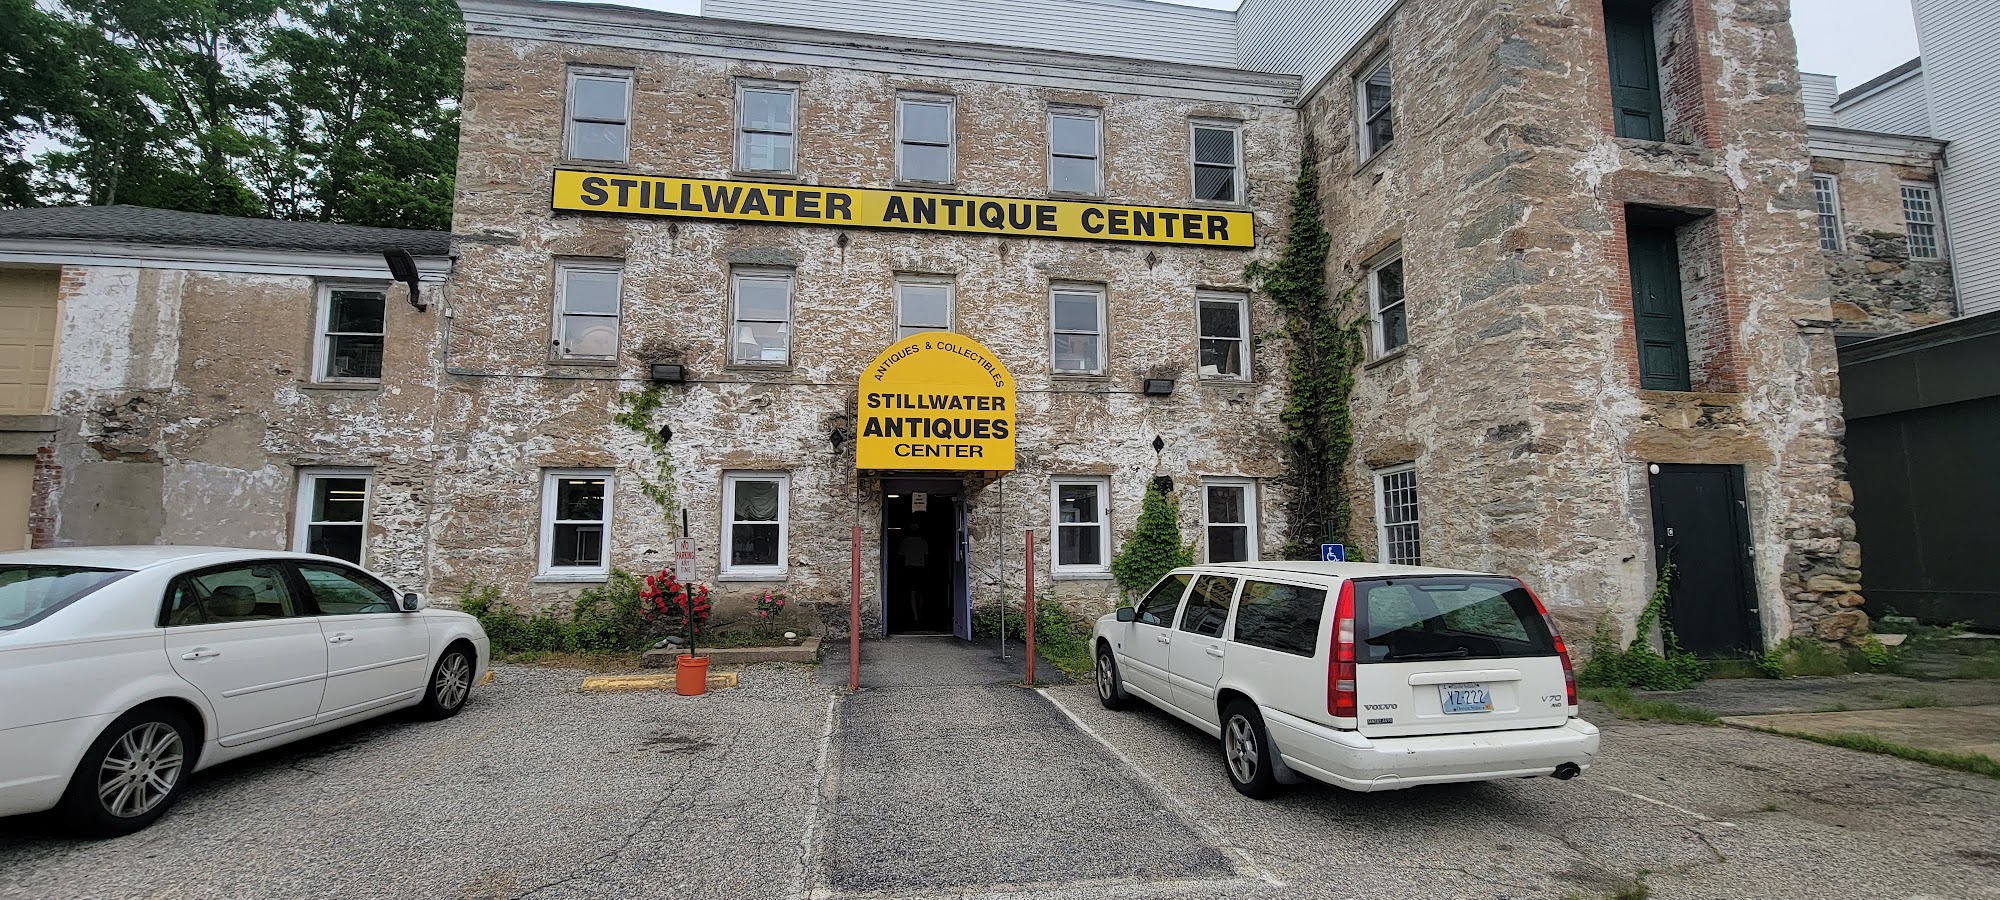 Stillwater Antique Center